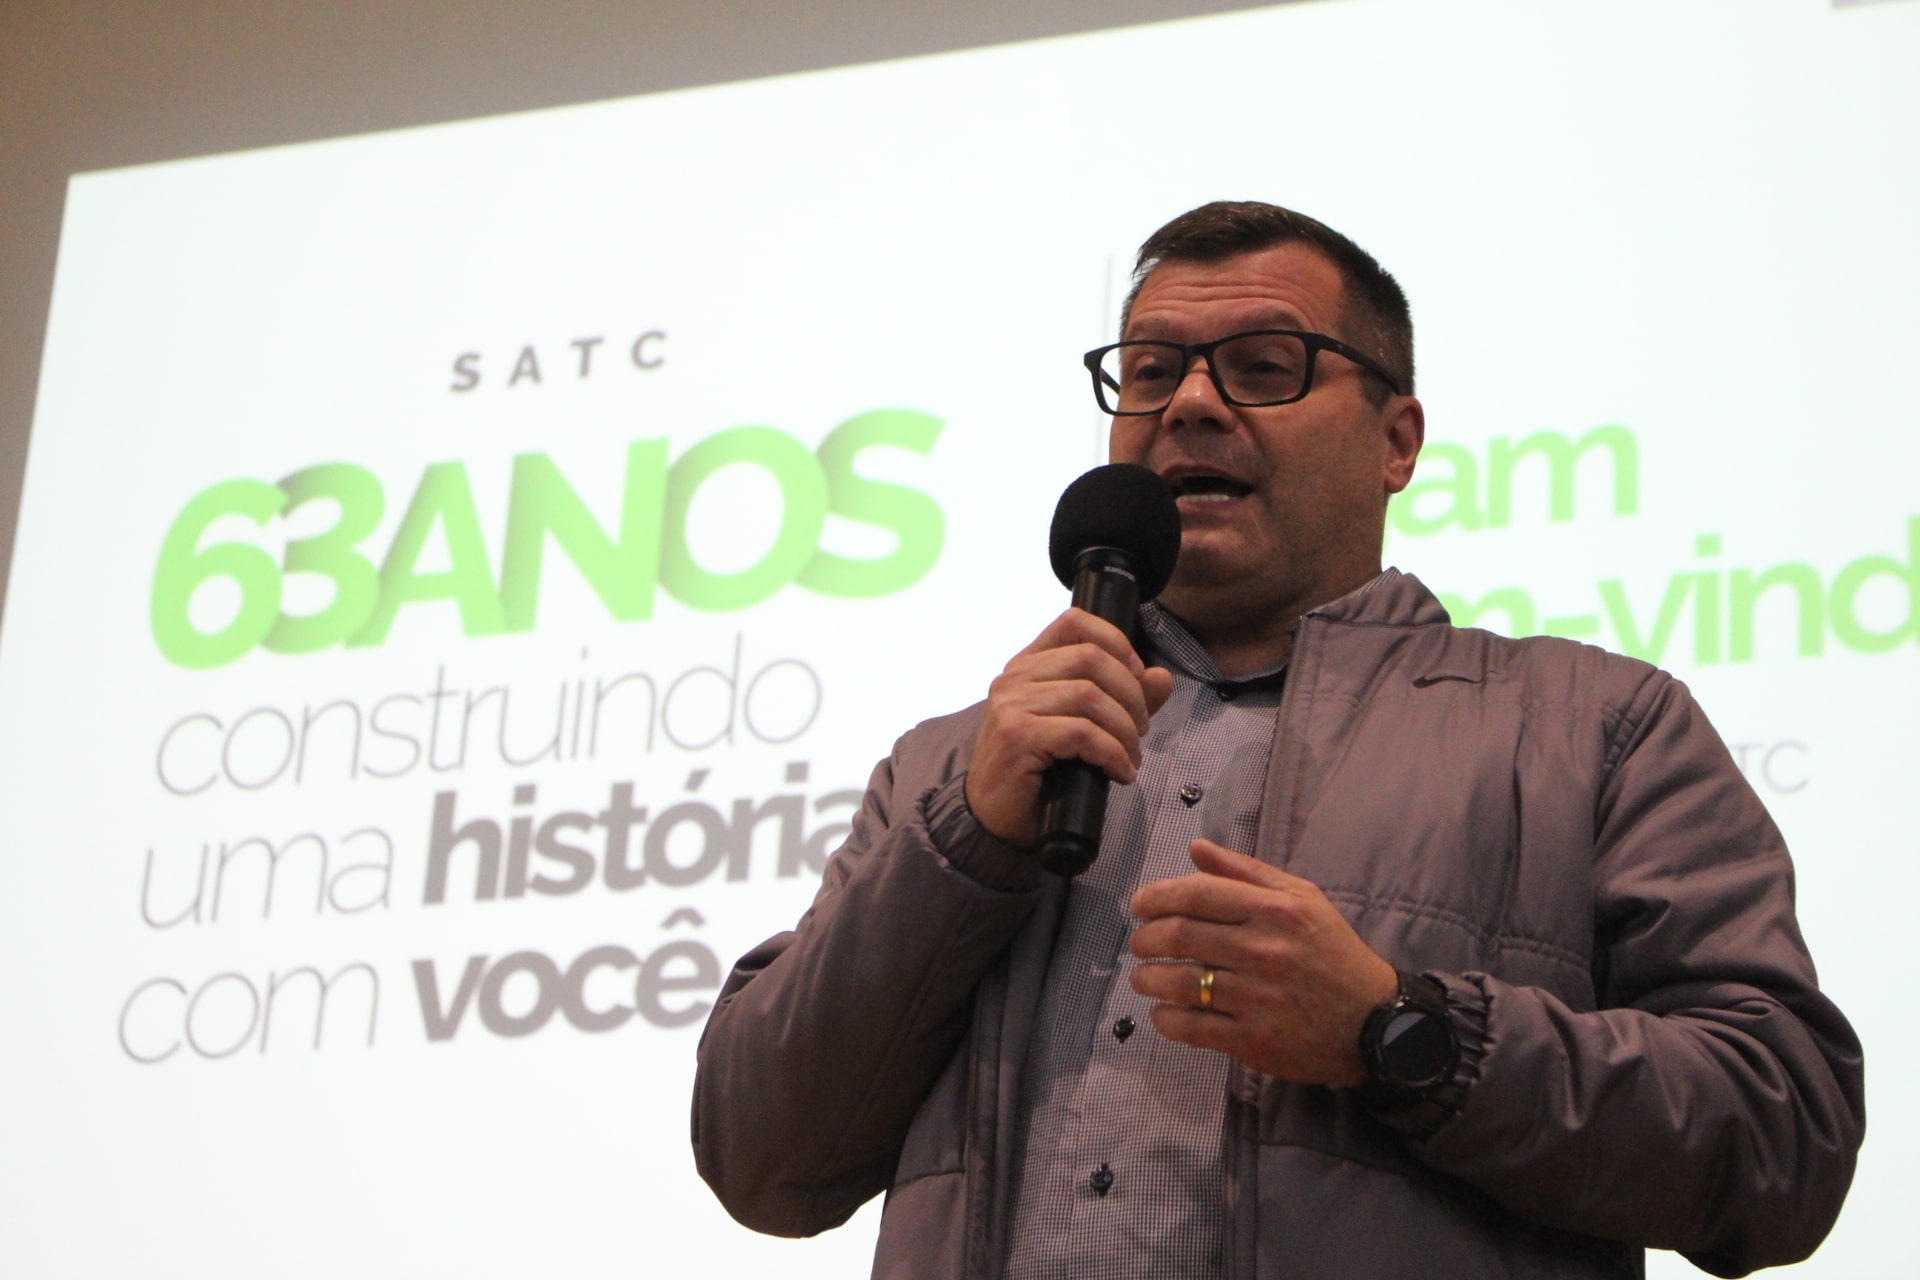 Comemoração do aniversário da história do colégio contou com a reinauguração do Auditório, que homenageia o ex-diretor, João Luiz Novelli